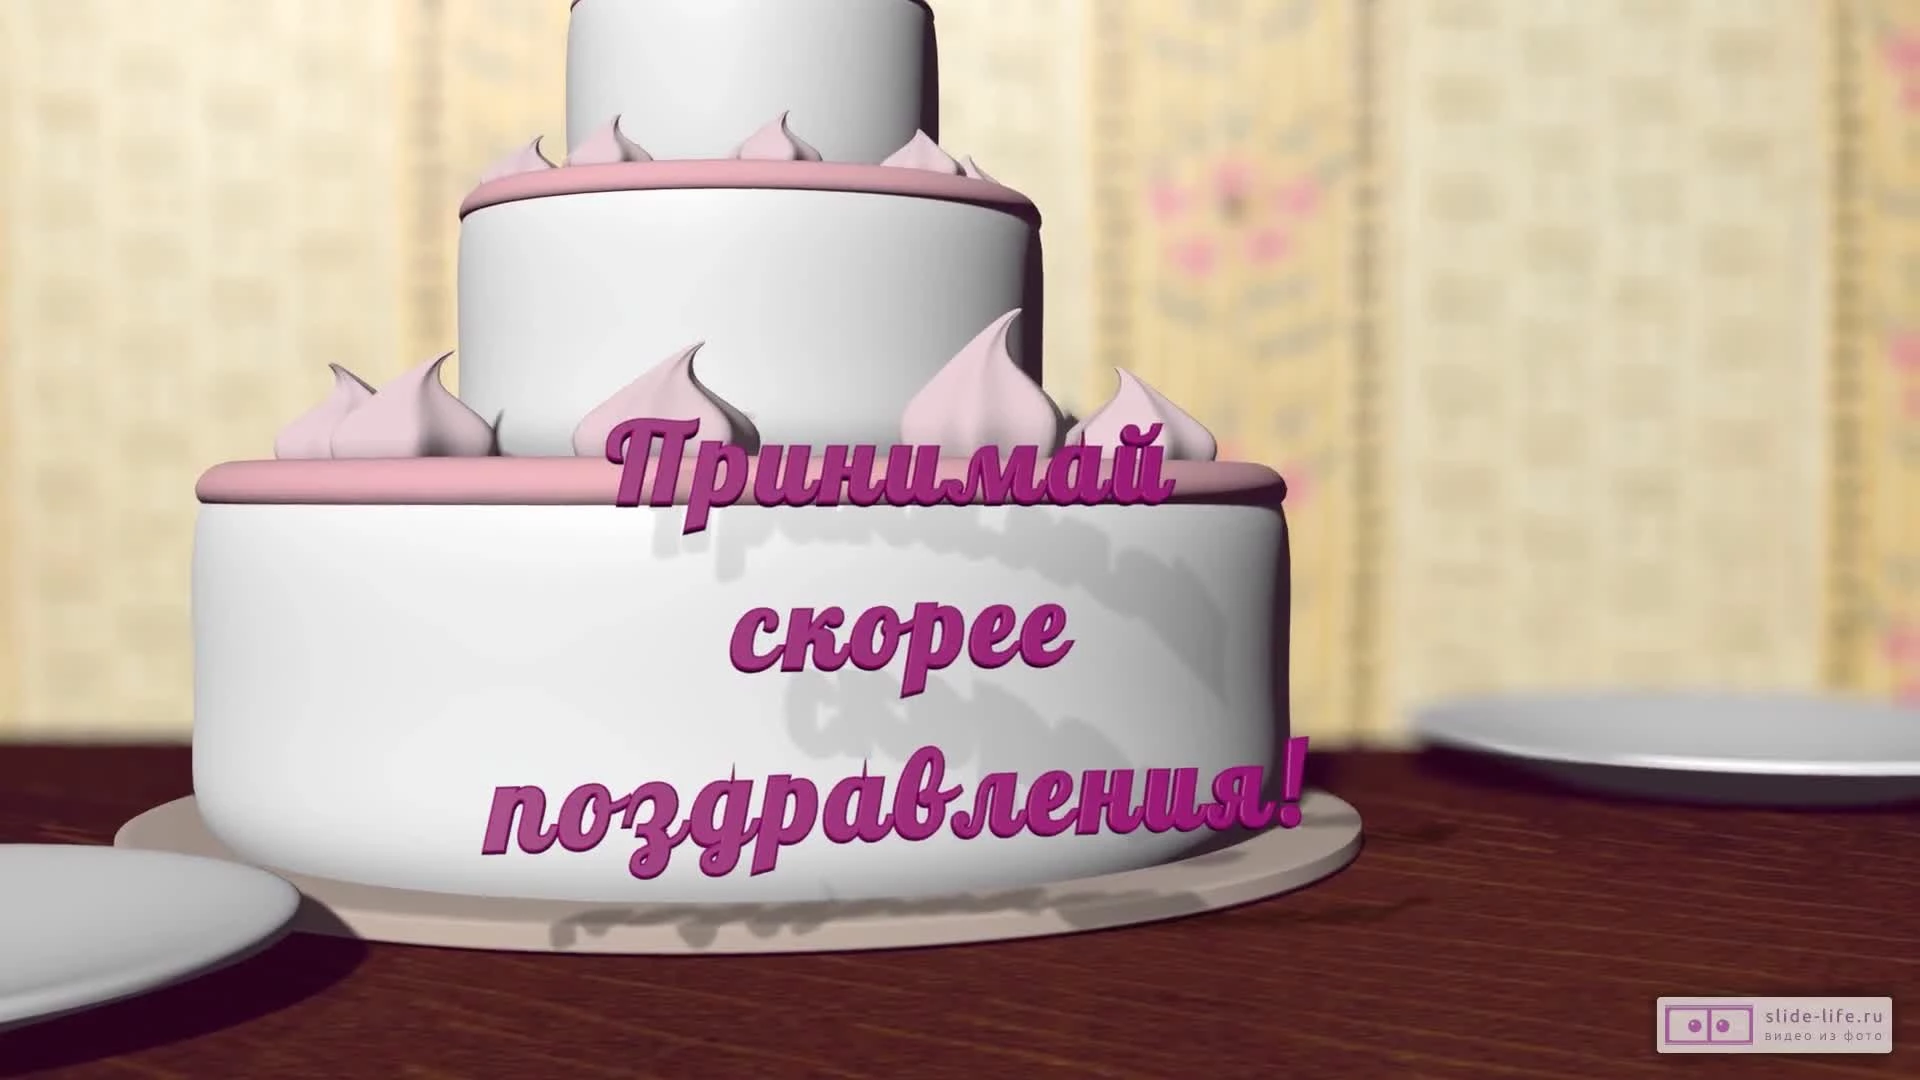 Прикольное видео поздравление с днем рождения мальчику 12 лет — Slide-Life.ru